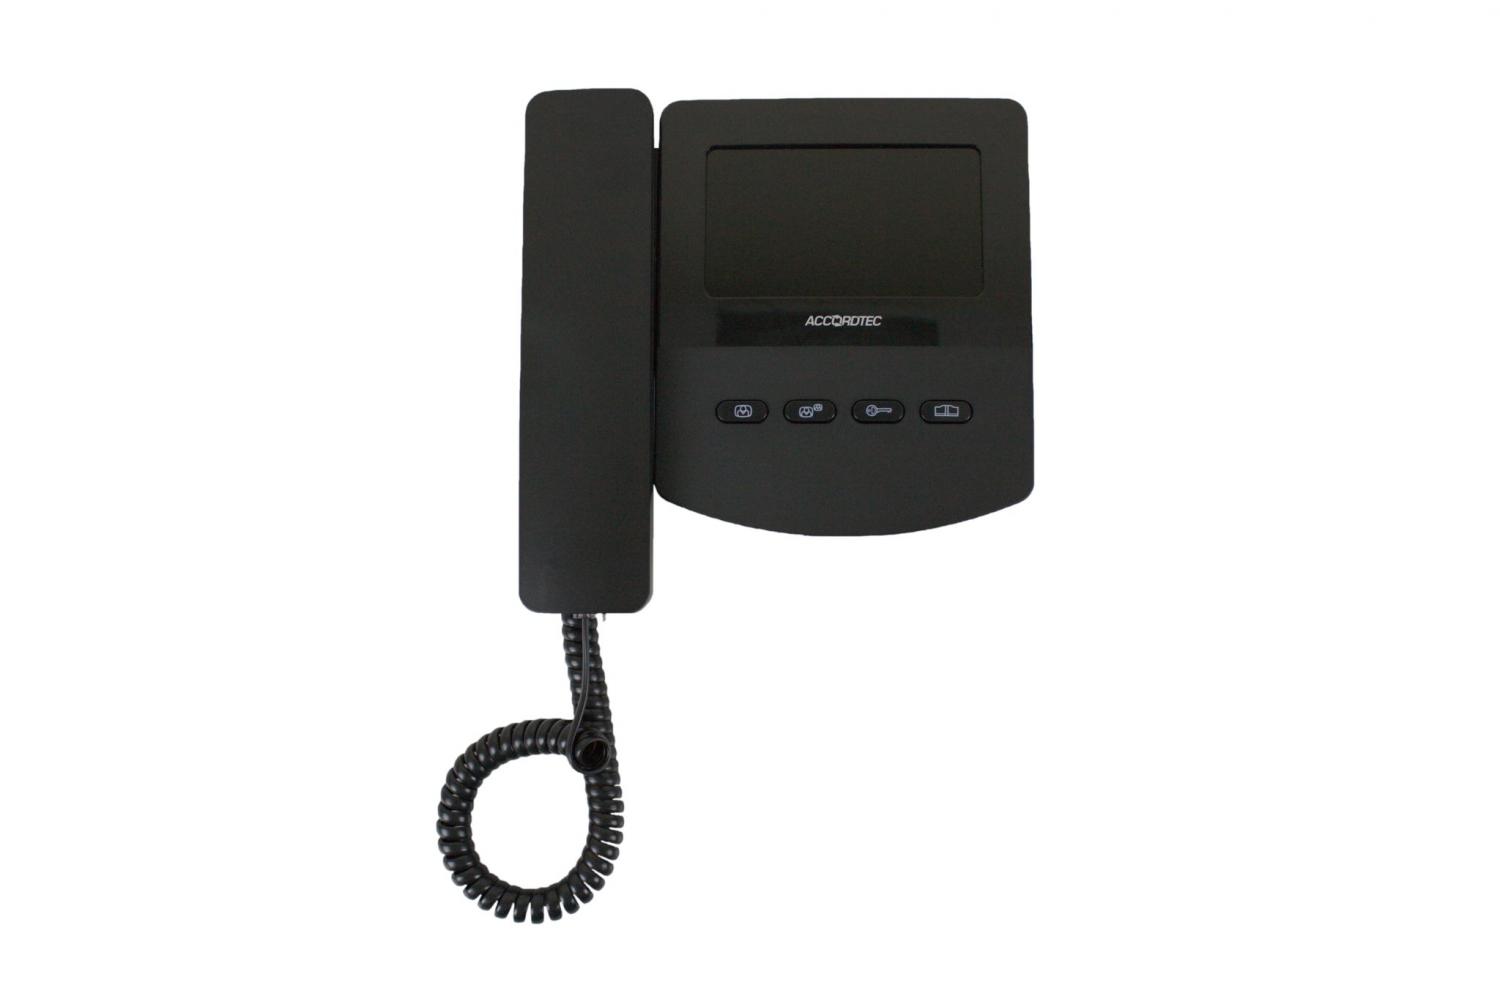 Лучшая цена на AccordTec AT-VD 433C (черный) мониторы видеодомофонов купите с доставкой на дом #оставайтесьдома